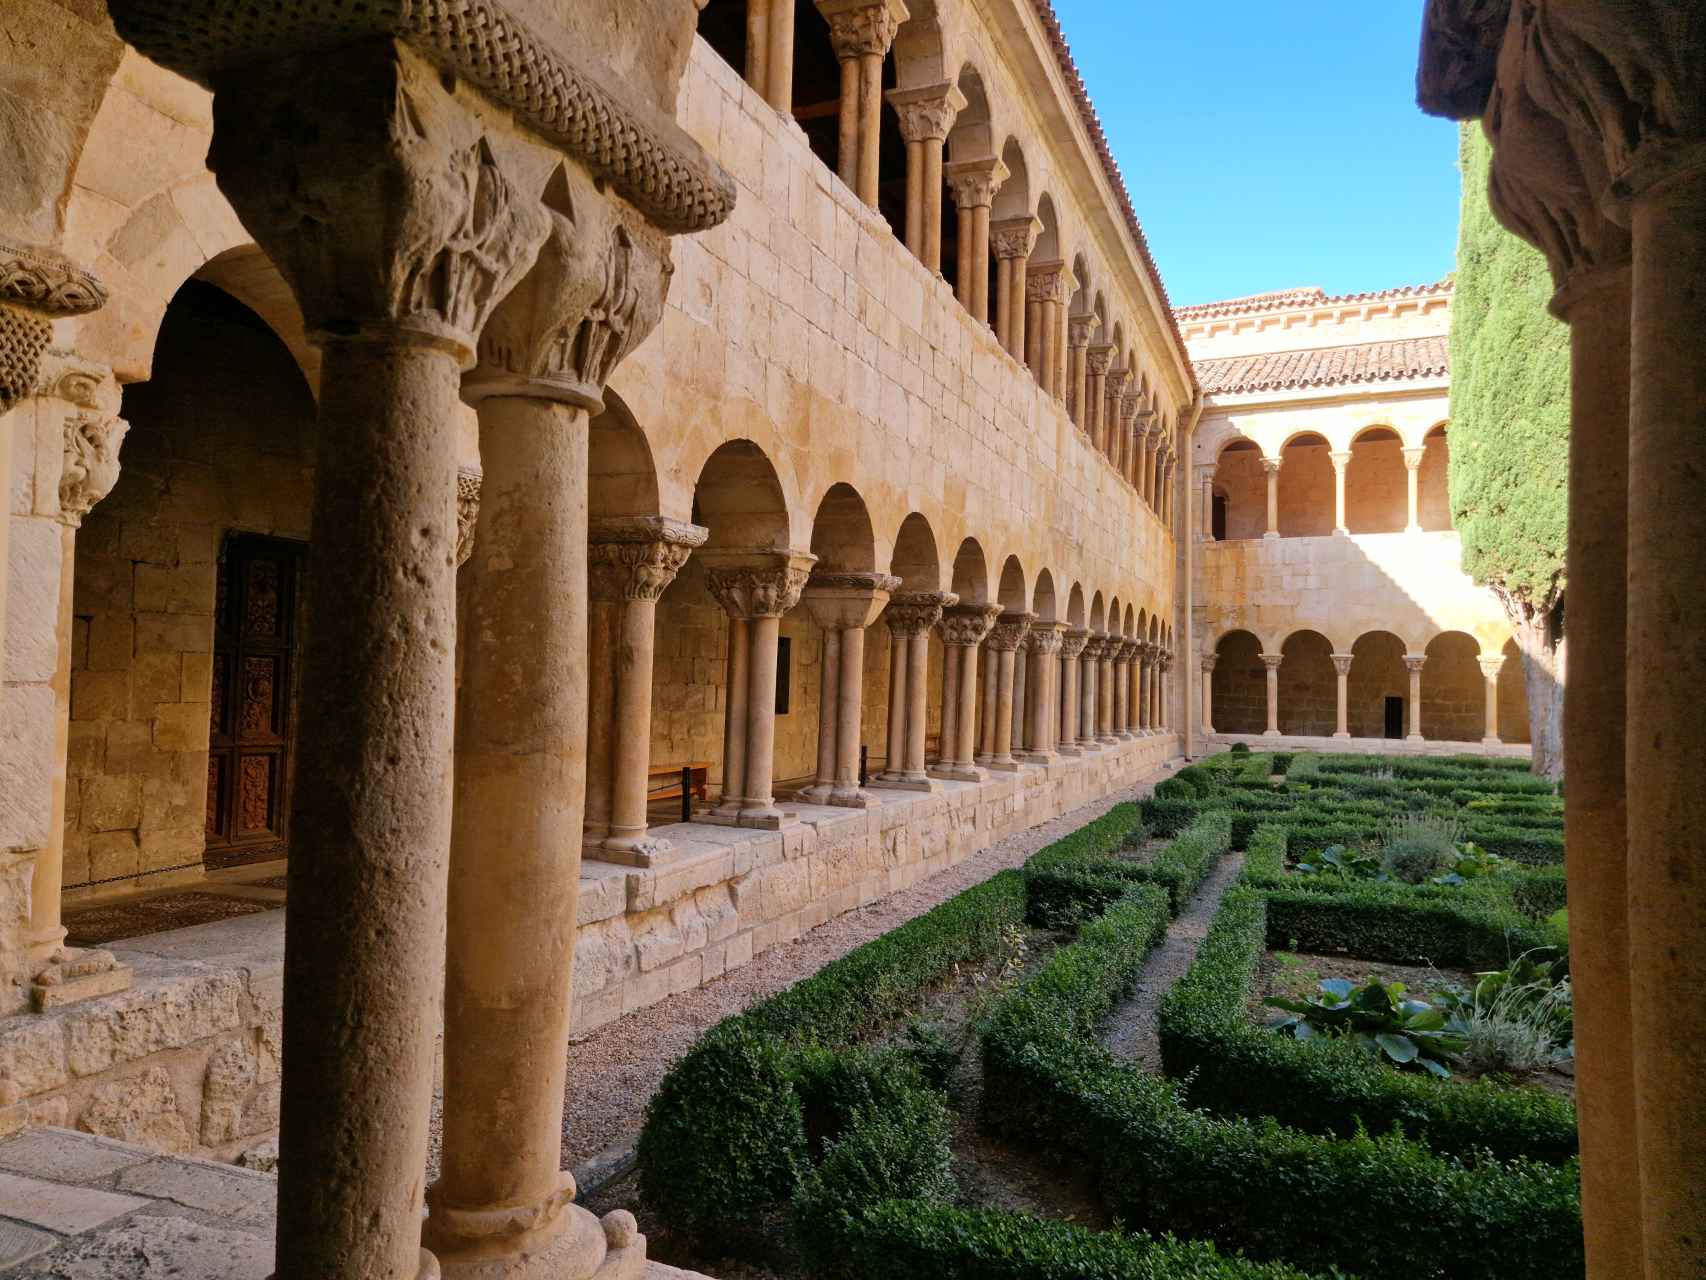 El claustro es  considerado el más bonito de Europa. Con dos niveles superpuestos, en el inferior se pueden observar  trabajos de los siglos XI y XII y en el superior, de finales del XII / A. VIRI